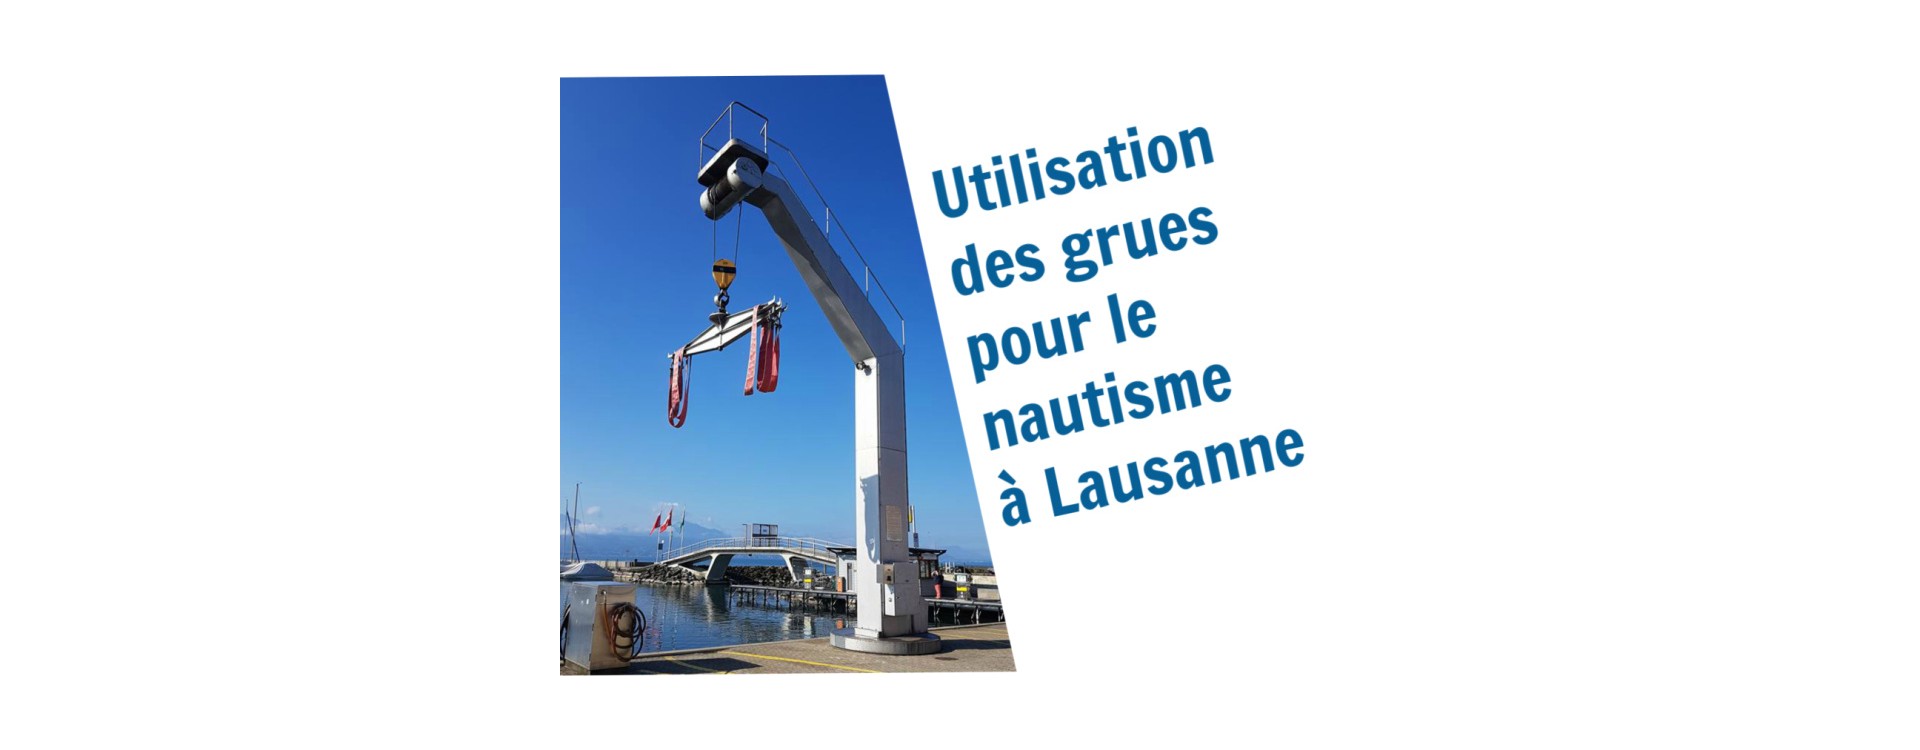 Informationen zum Bootskranen in Lausanne